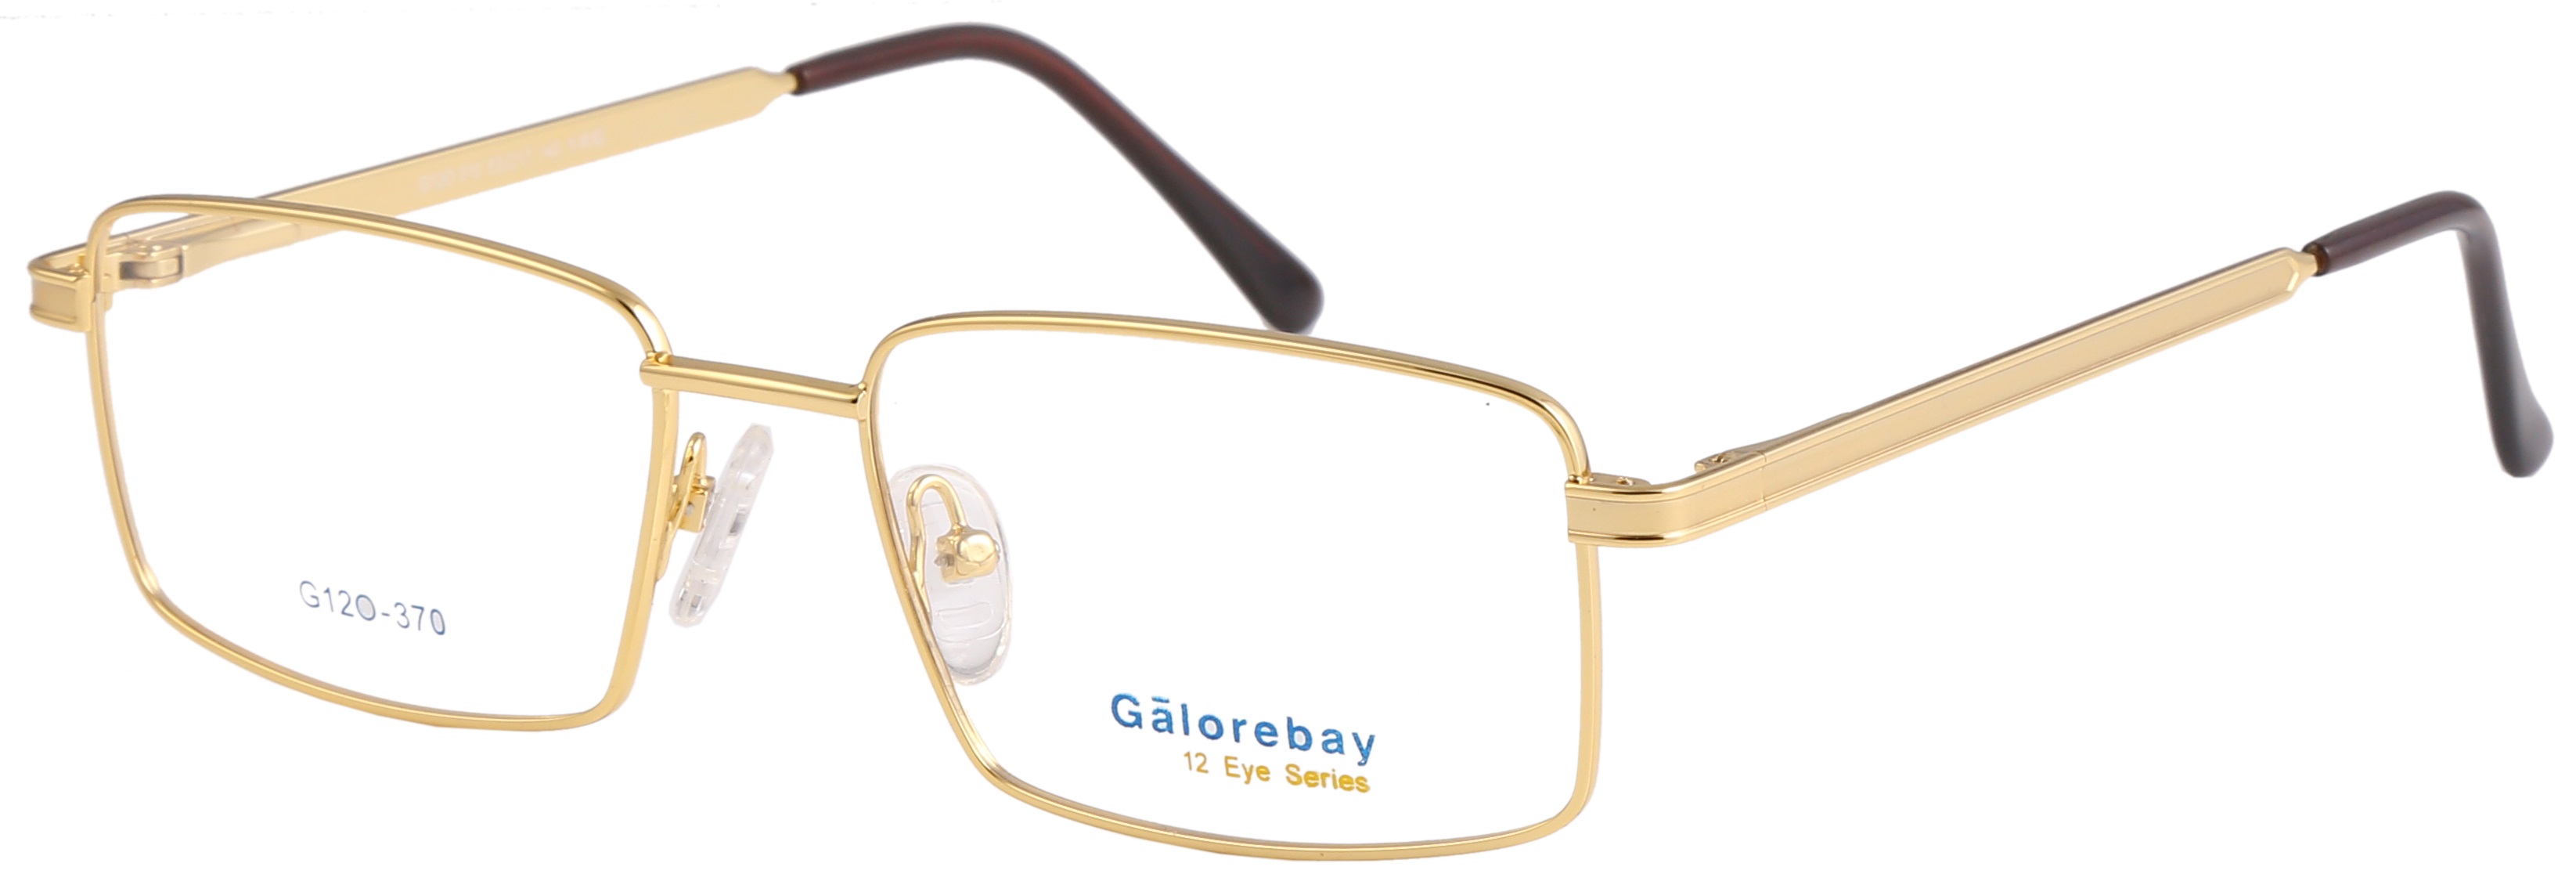 Galorebay Model No - G120-370